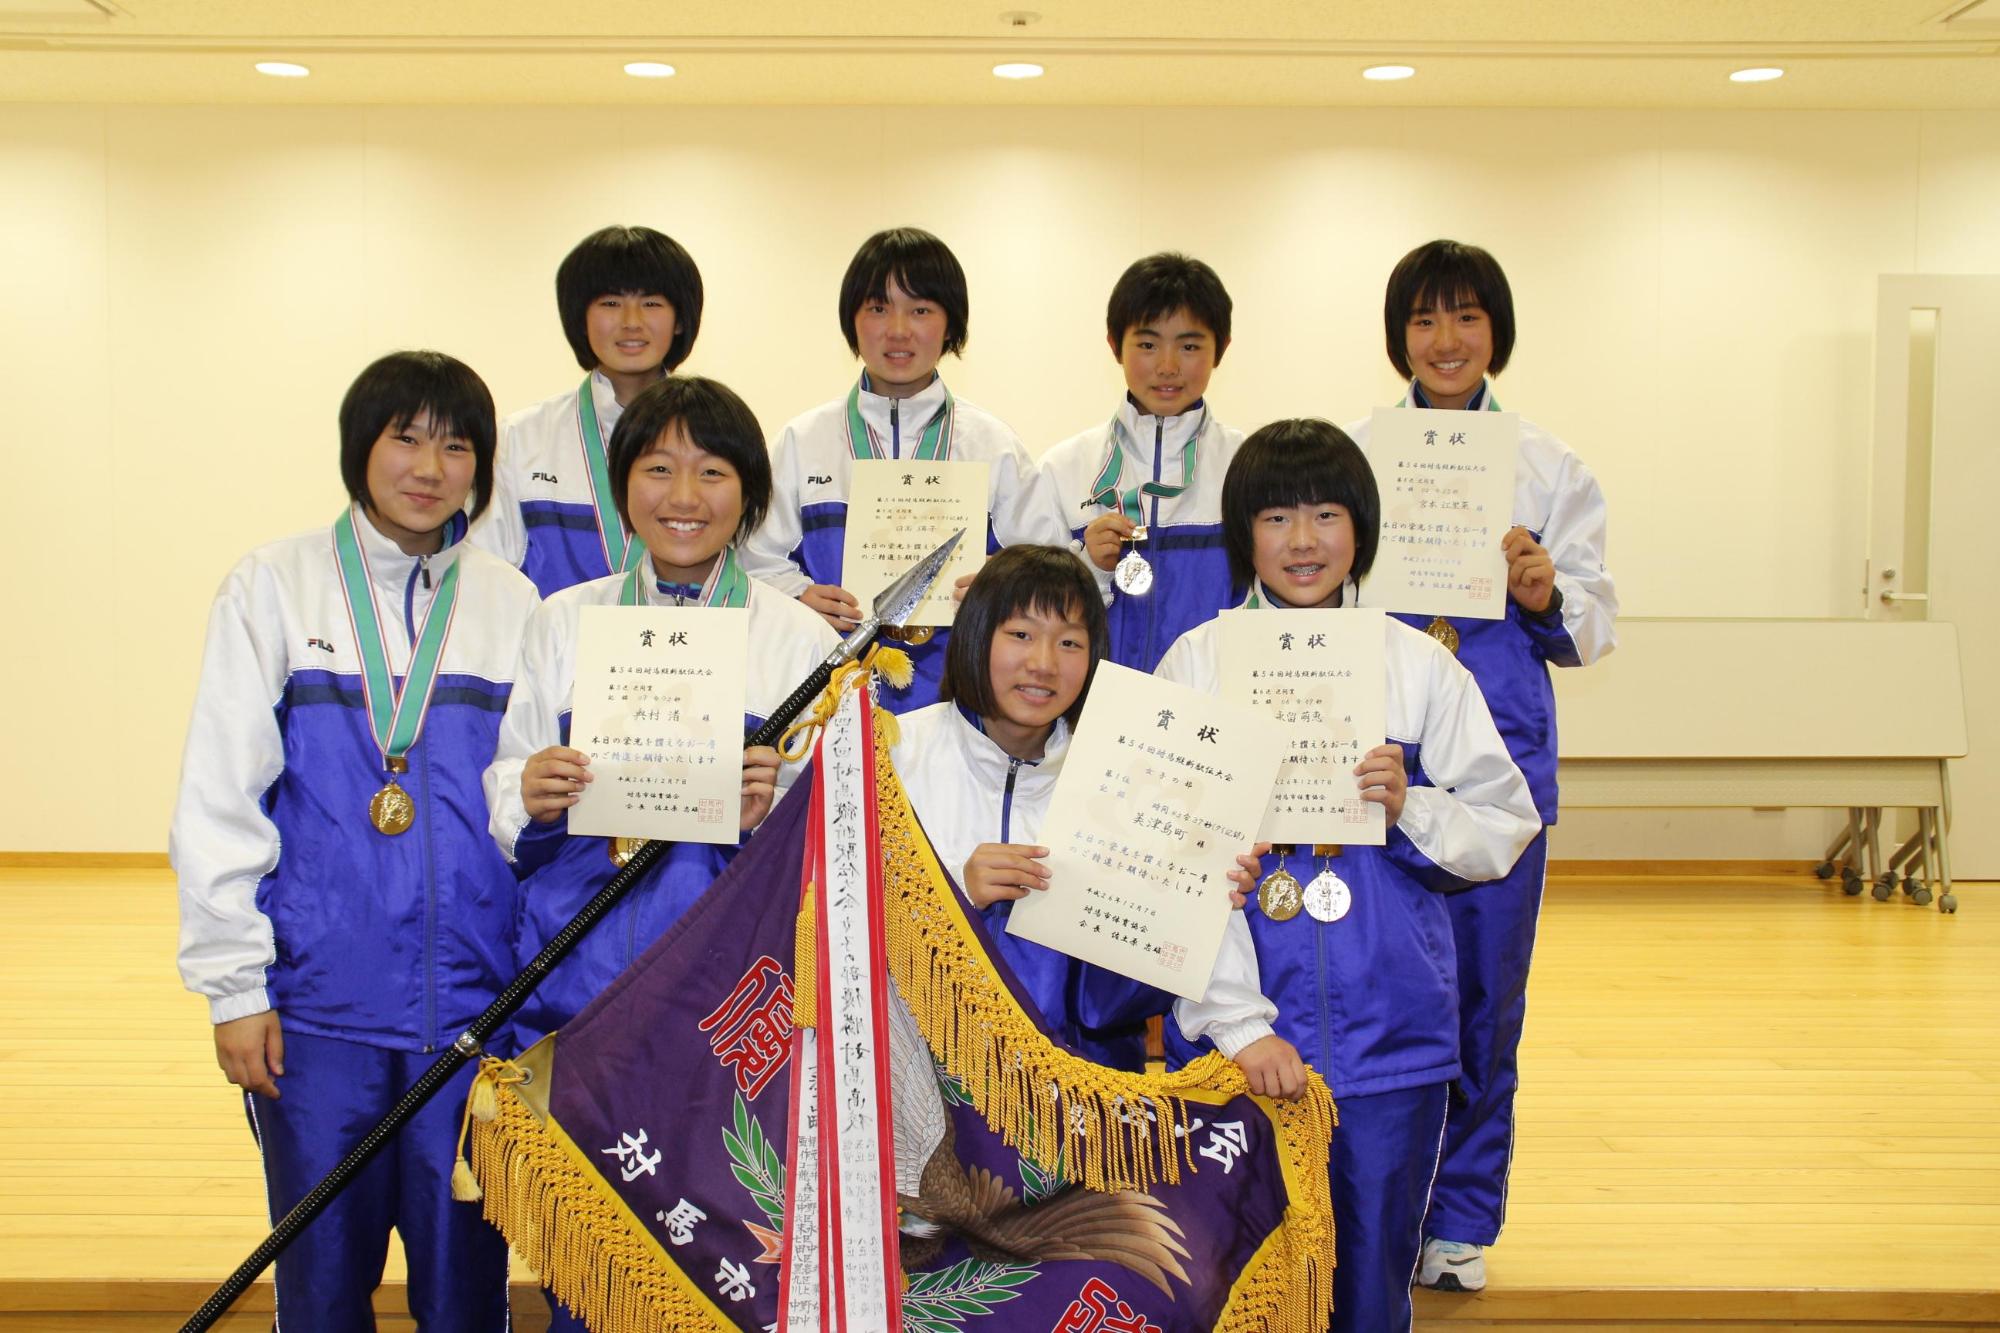 優勝旗と賞状を手に正面を向く女子の部で優勝した美津島チームメンバーの写真